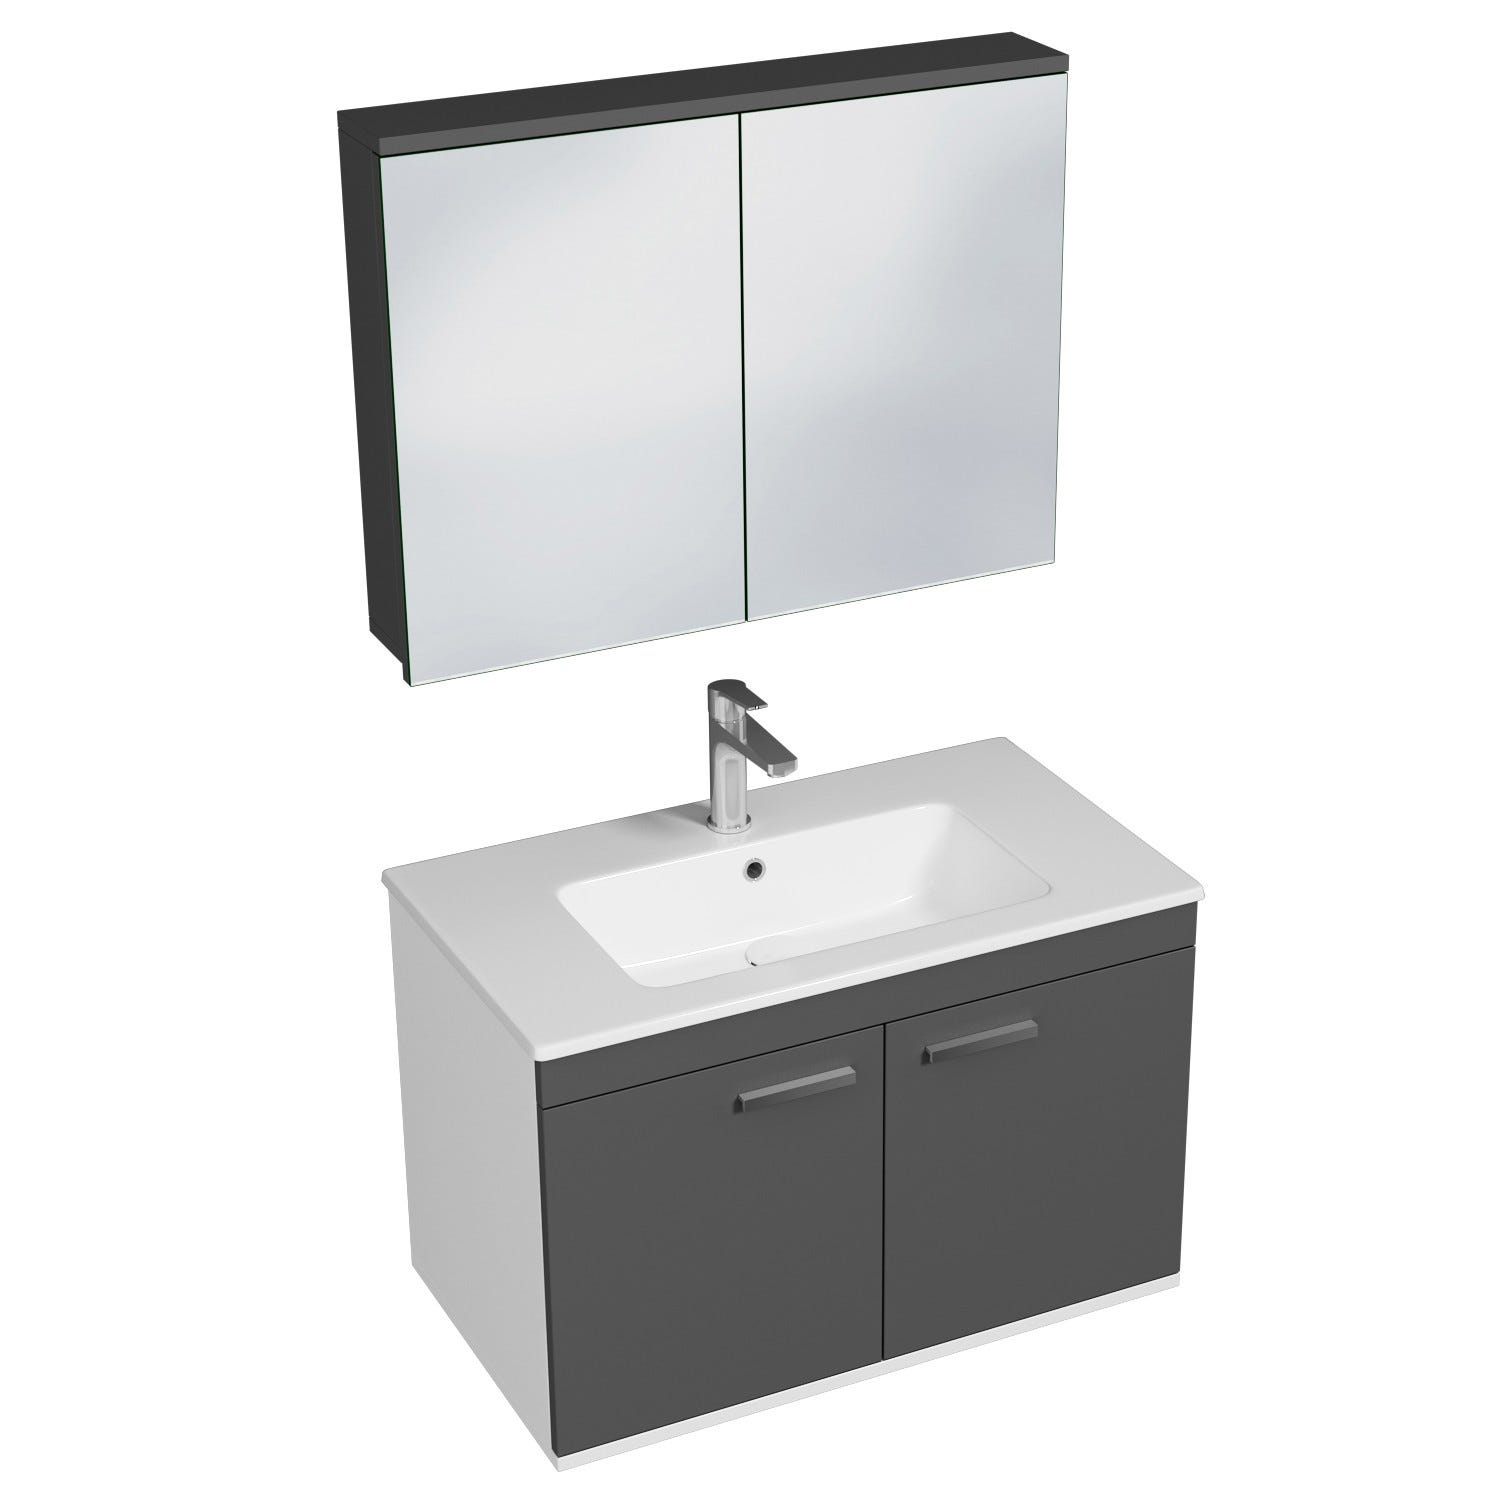 RUBITE Meuble salle de bain simple vasque 2 portes gris anthracite largeur 80 cm + miroir armoire 0